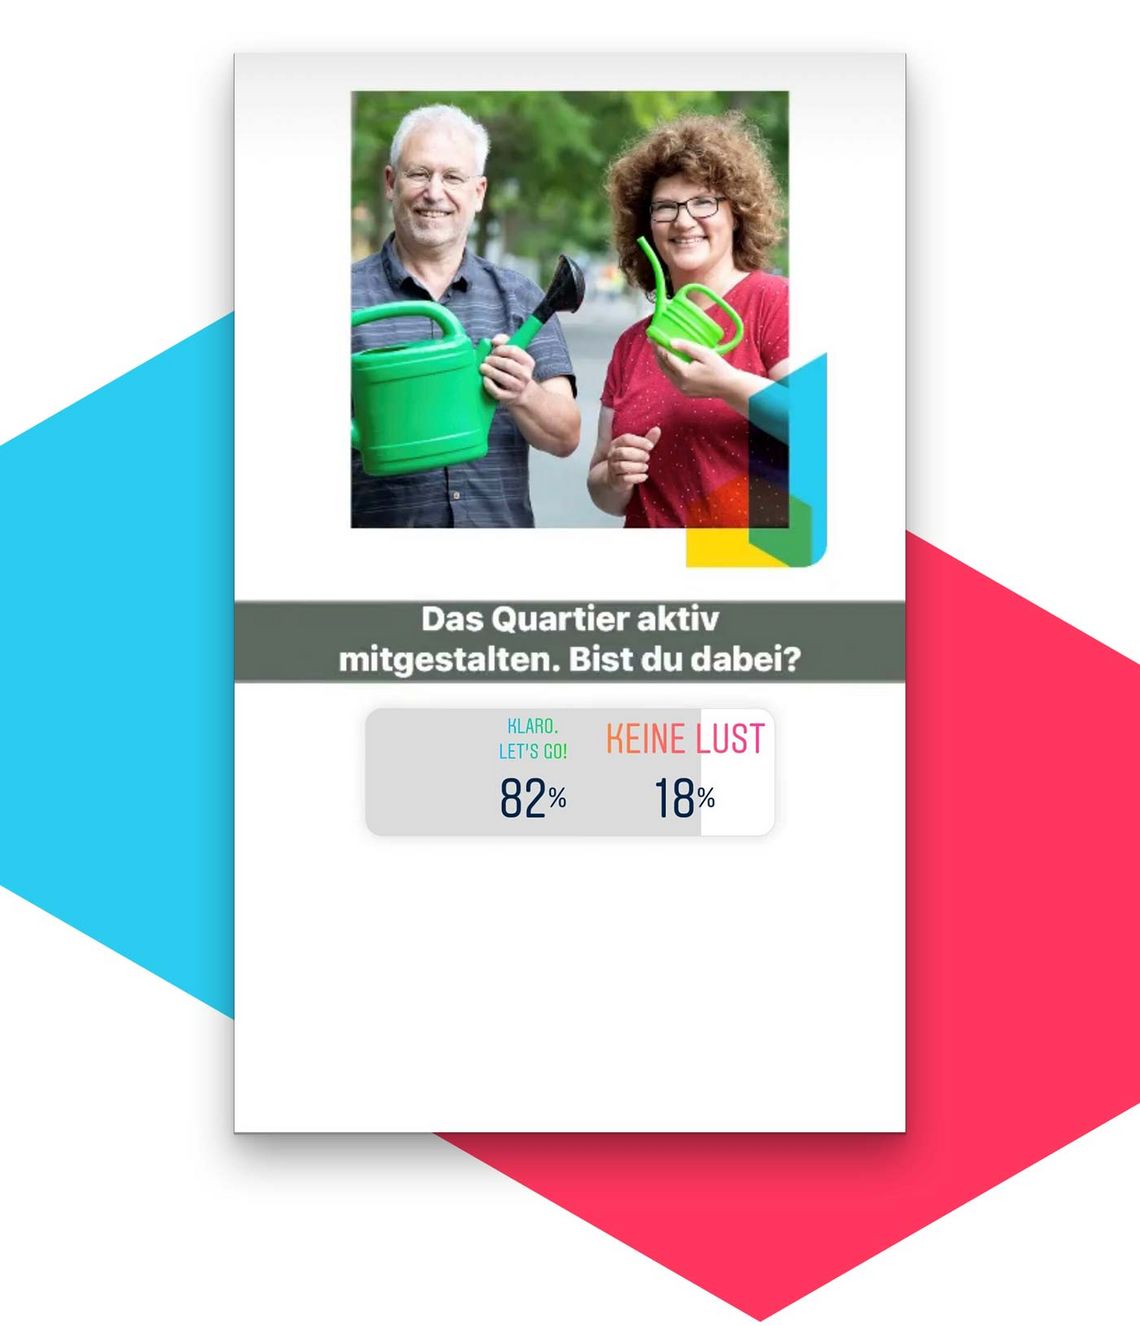 Umfrageergebnis „Das Quartier aktiv mitgestalten – sind Sie dabei?" – Ergebnis: 82% Klaro, let’s go / 18% keine Lust